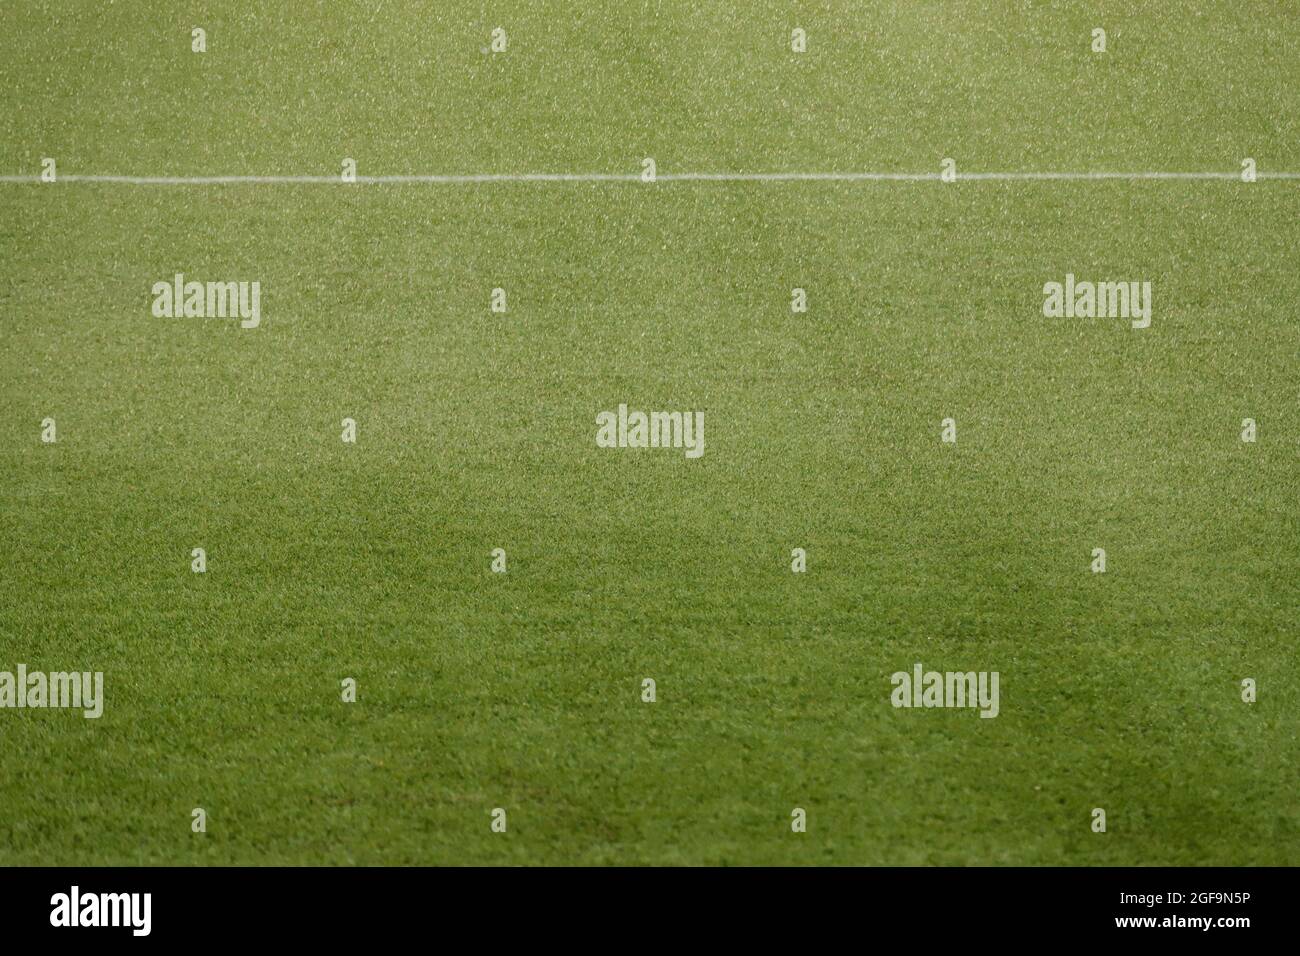 Fußballfeld mit Kunstrasen, die auf der Oberseite benetzt, mit einer weißen Linie Stockfoto